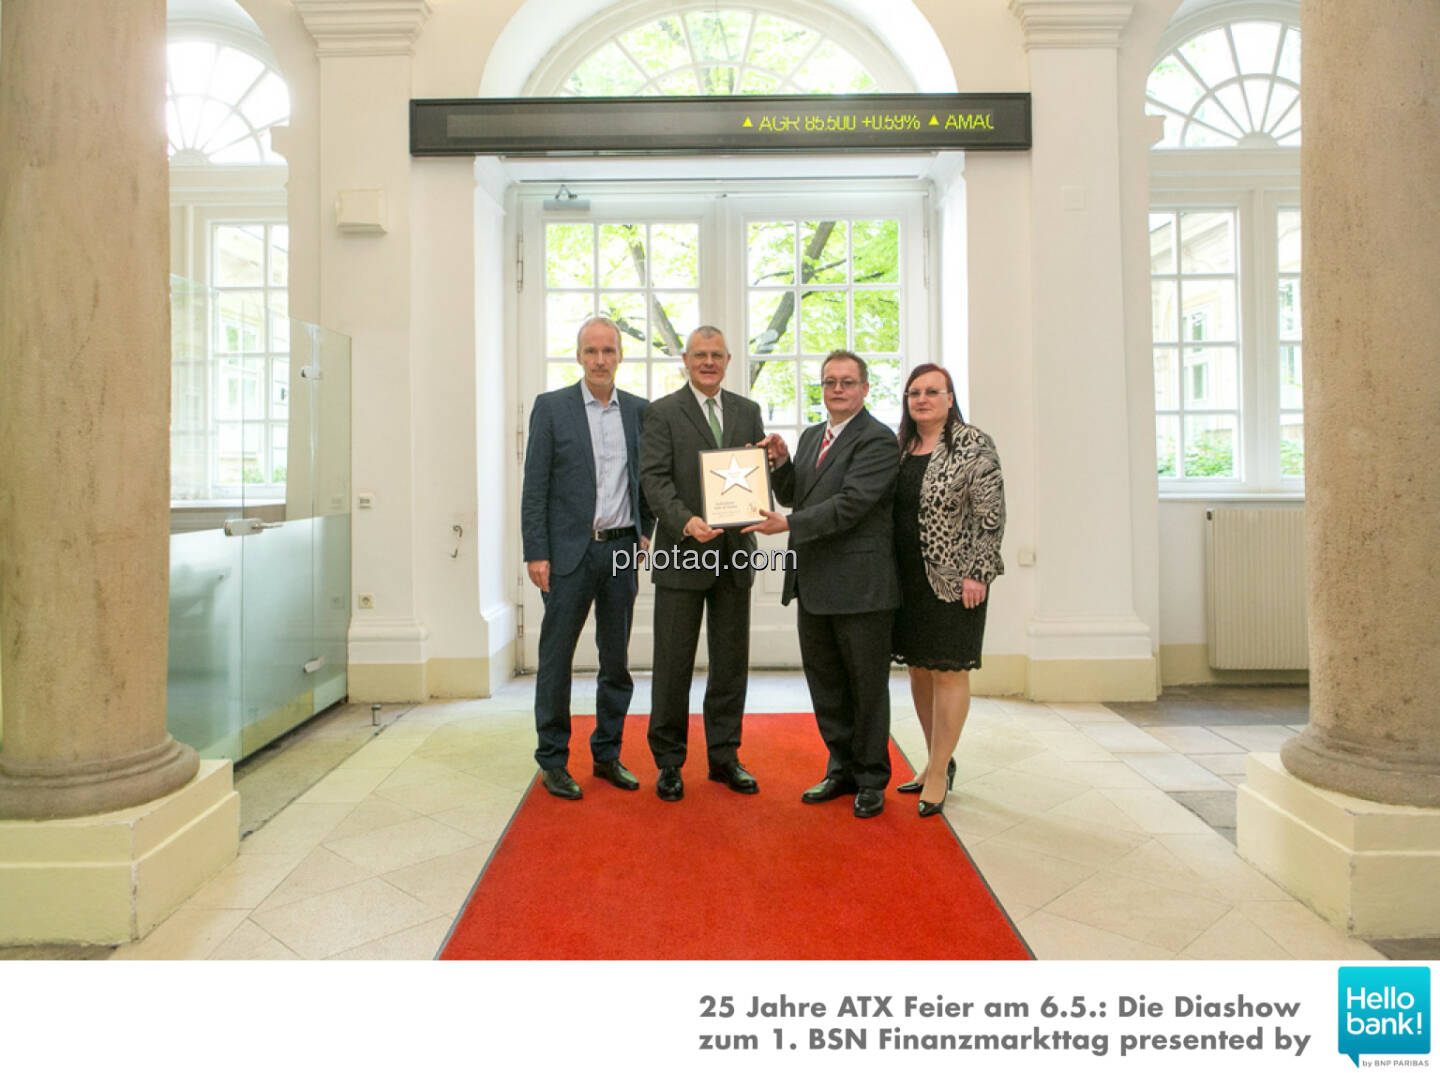 Michael Buhl wird in die Hall of Fame (Class of 2016) des Wiener Kapitalmarkts aufgenommen: Christian Drastil, Michael Buhl, Gregor Rosinger, Yvette Rosinger http://boerse-social.com/hall-of-fame